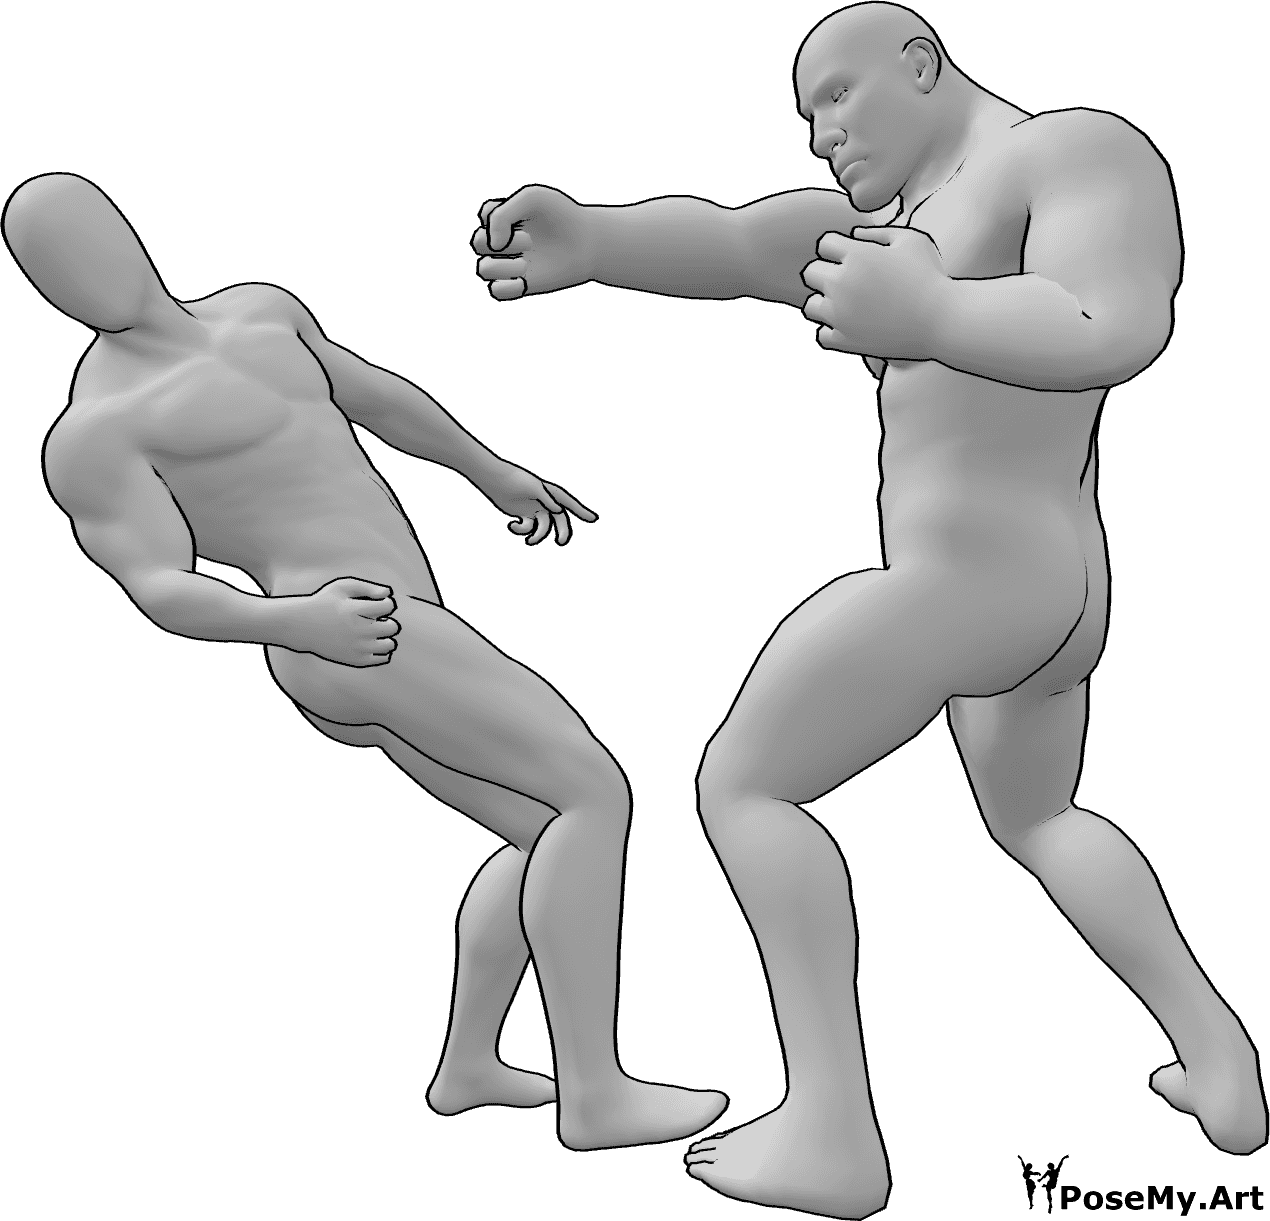 Referência de poses- Pose de luta masculina bruta - O macho bruto derruba o outro macho e este cai para trás.